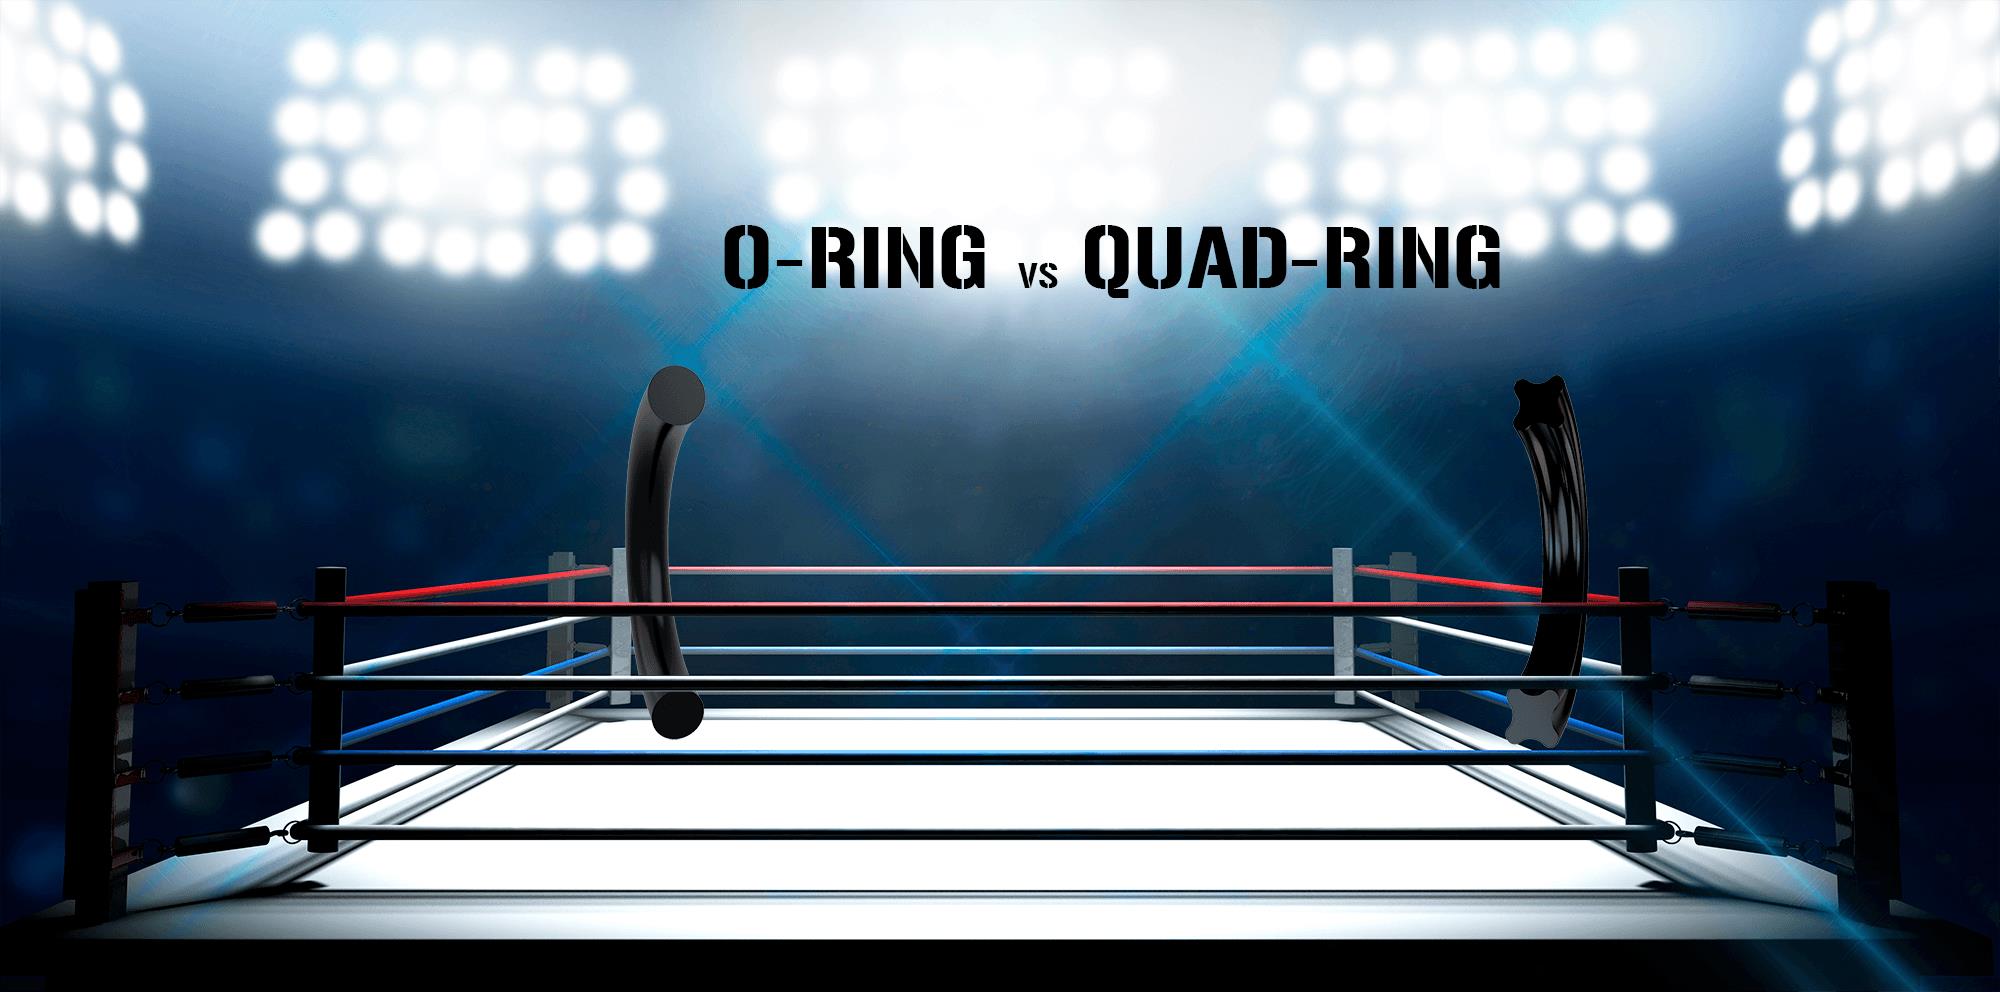 Ventajas de rendimiento de la Quad-Ring frente a la O-Ring